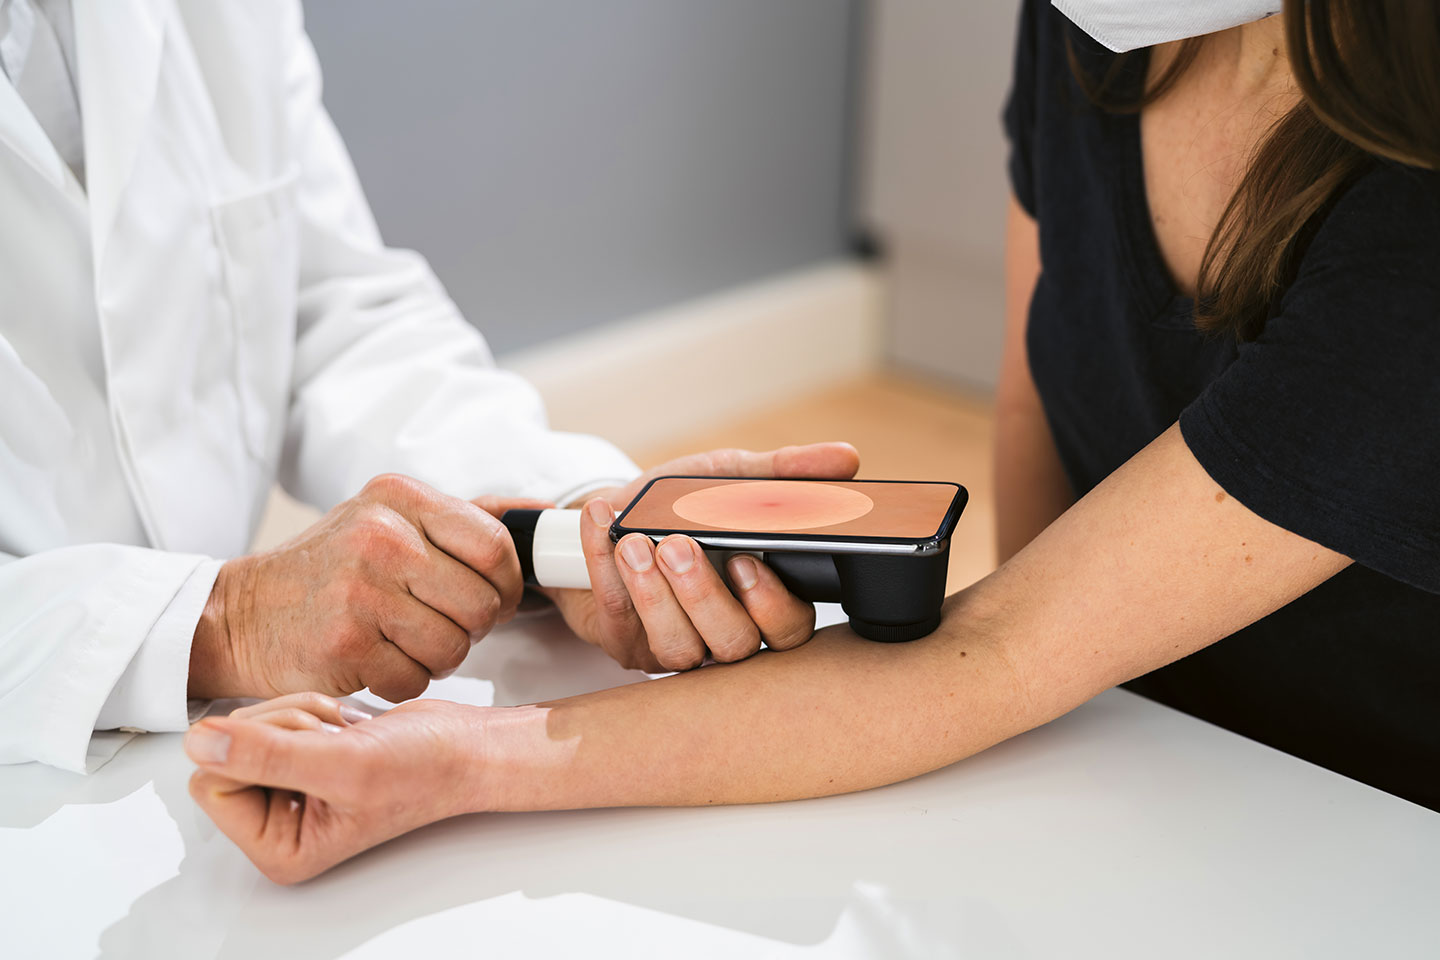 Foto: Ein Arzt untersucht einen Leberfleck bei einer Frau mittels Hautkrebsscreening.